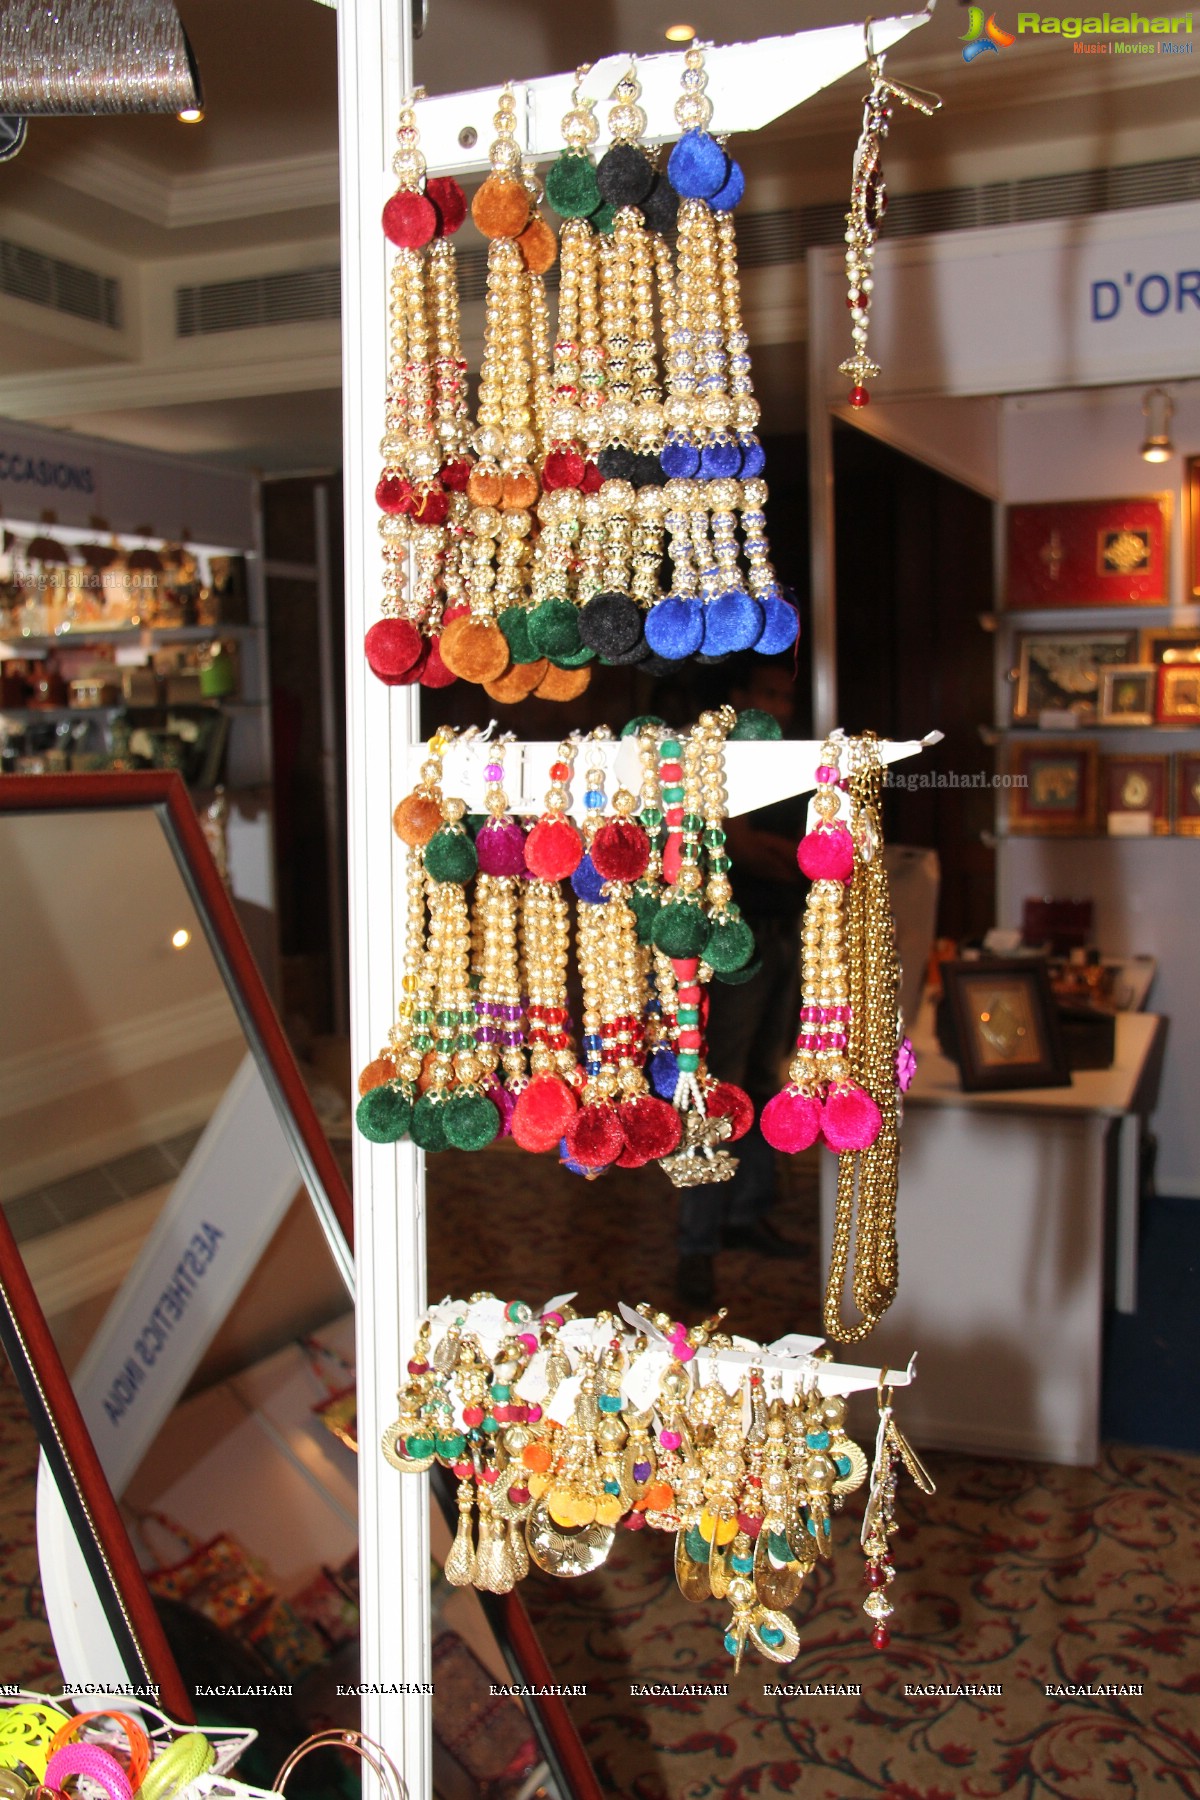 Petals 2013: Exhibition-Cum-Sale Of Designer Clothing, Jewellery & Accessories